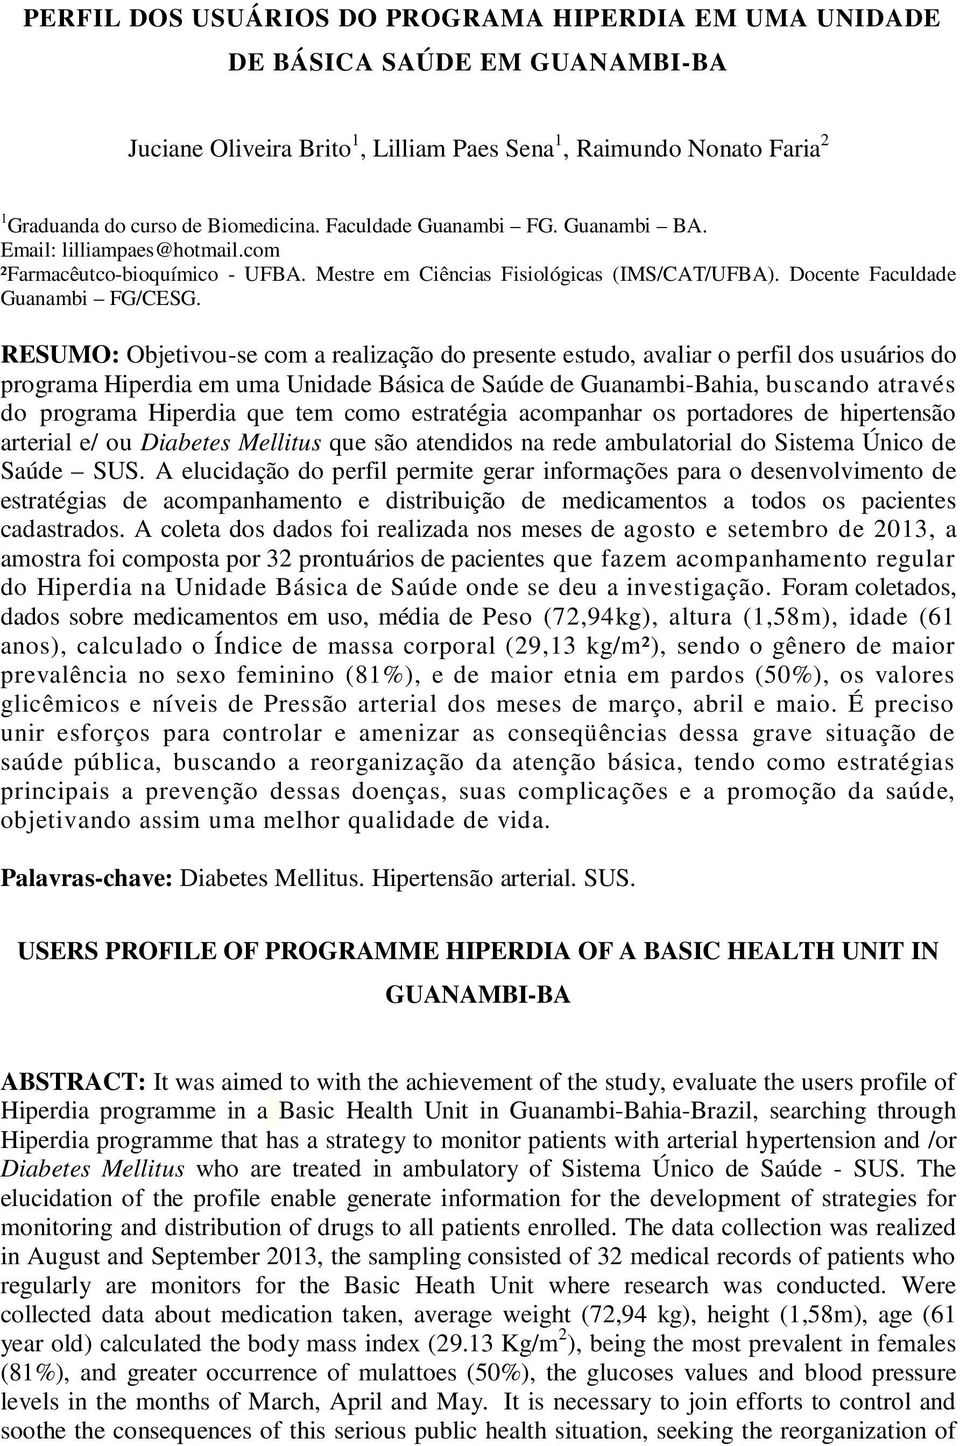 RESUMO: Objetivou-se com a realização do presente estudo, avaliar o perfil dos usuários do programa Hiperdia em uma Unidade Básica de Saúde de Guanambi-Bahia, buscando através do programa Hiperdia